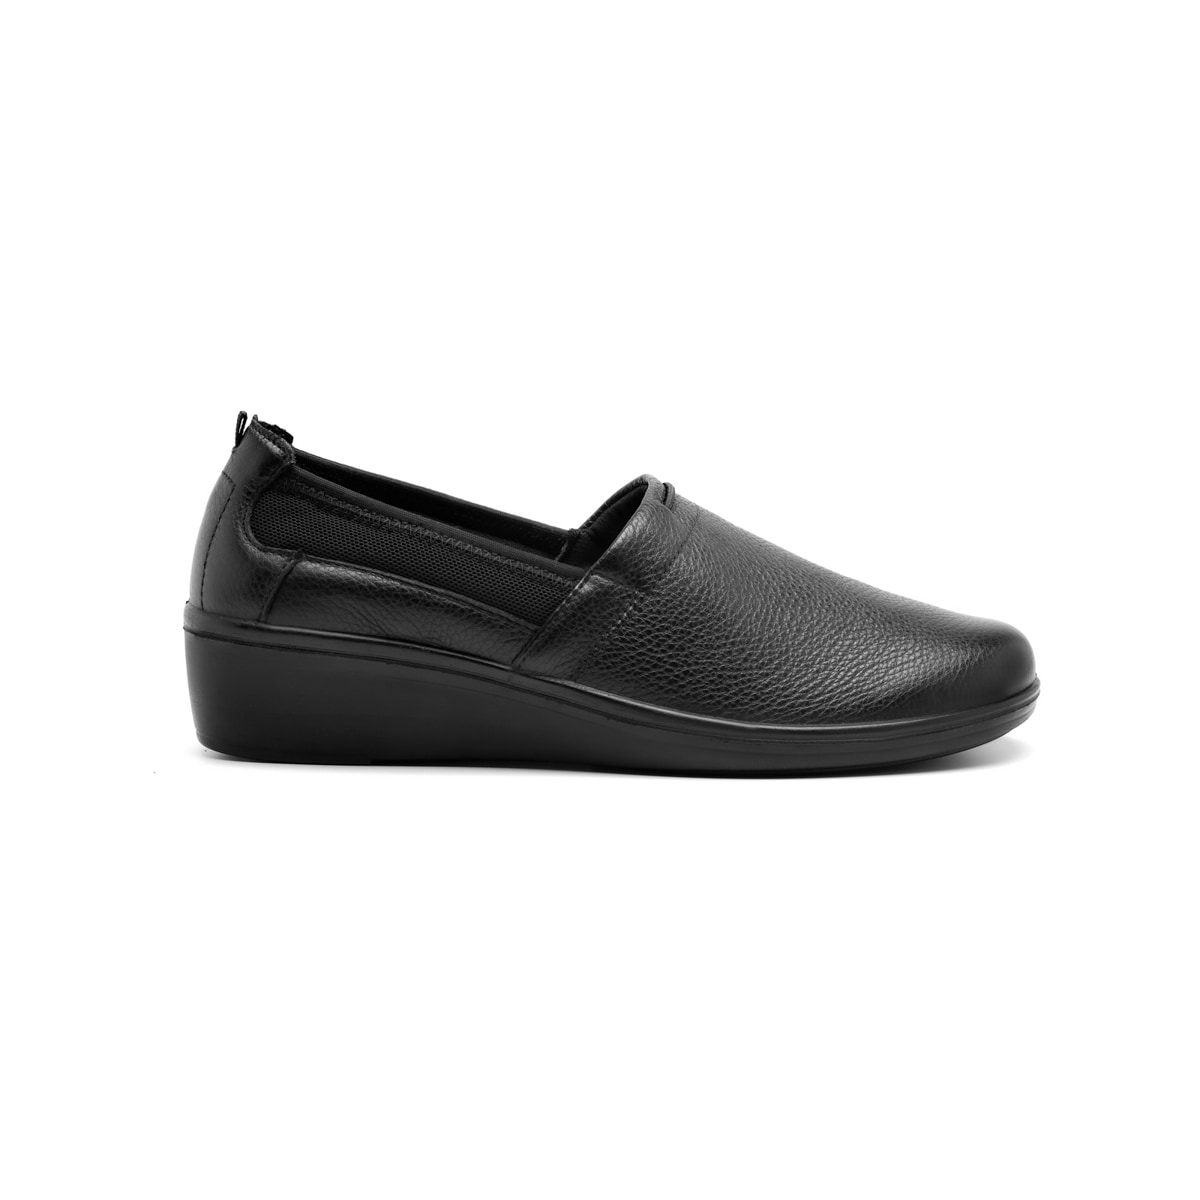 Sneaker Casual Flexi para Mujer con Plantilla Comfort Pad Estilo 103504  Blanco